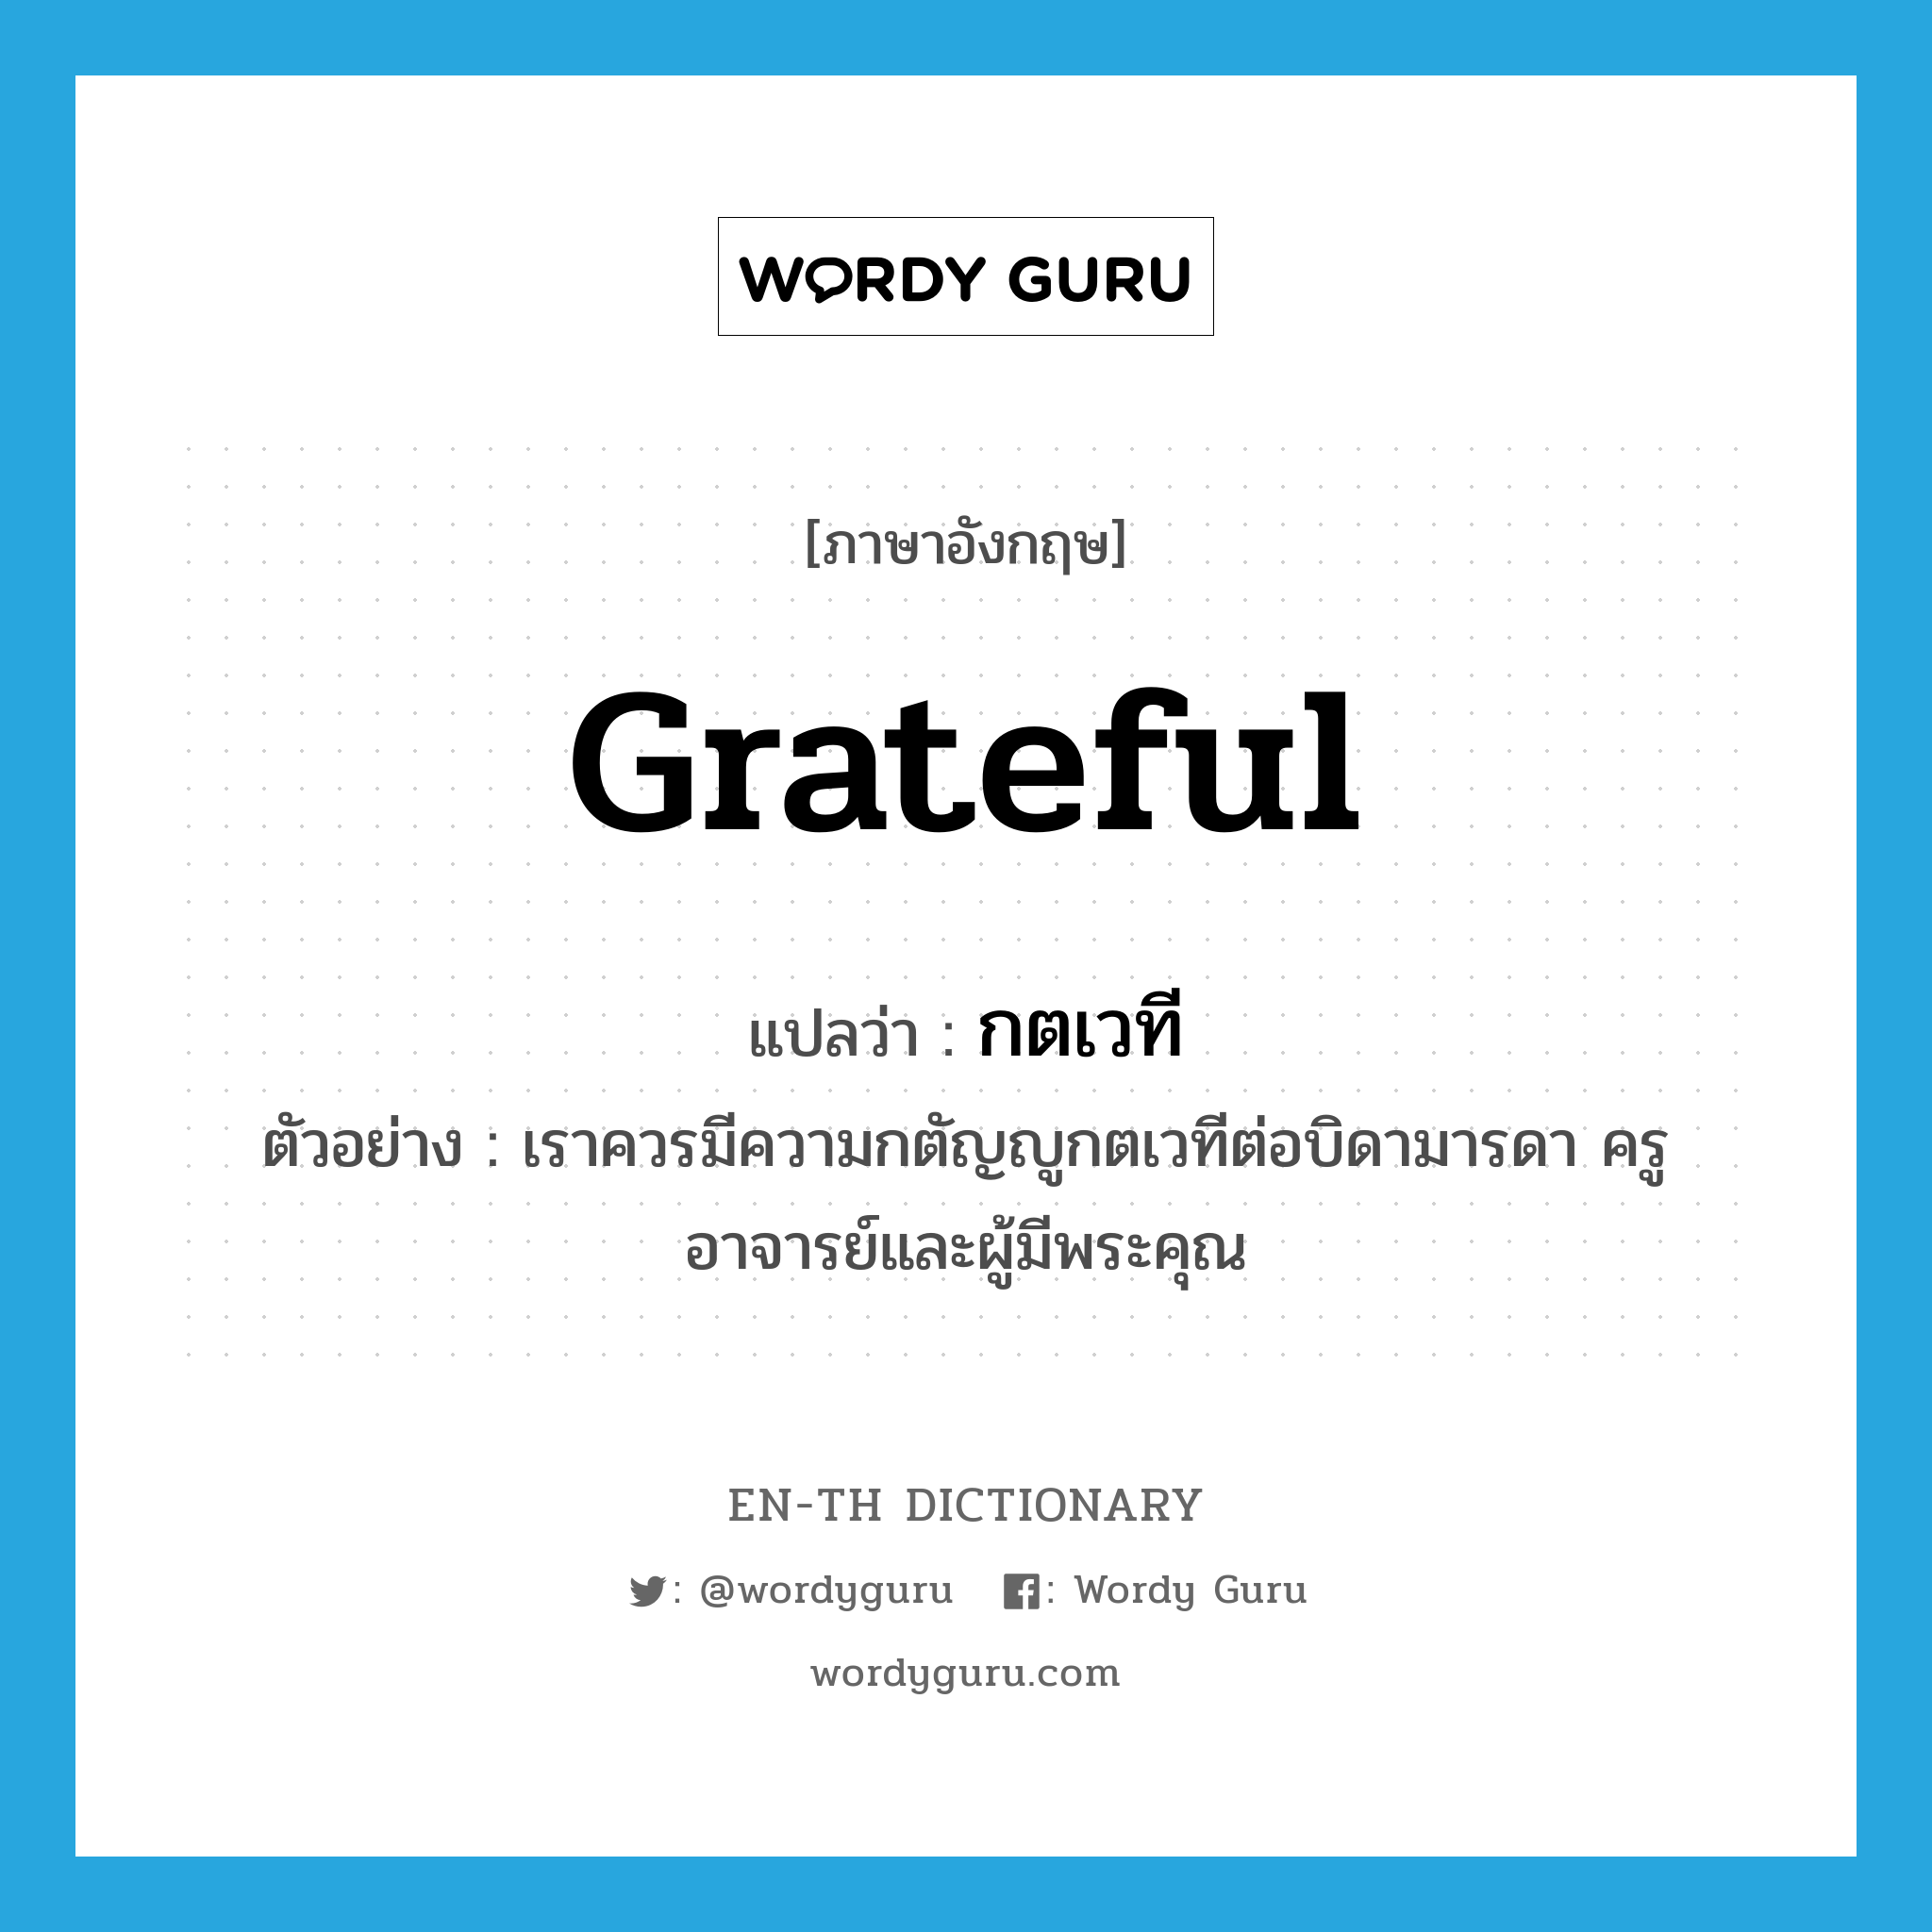 grateful